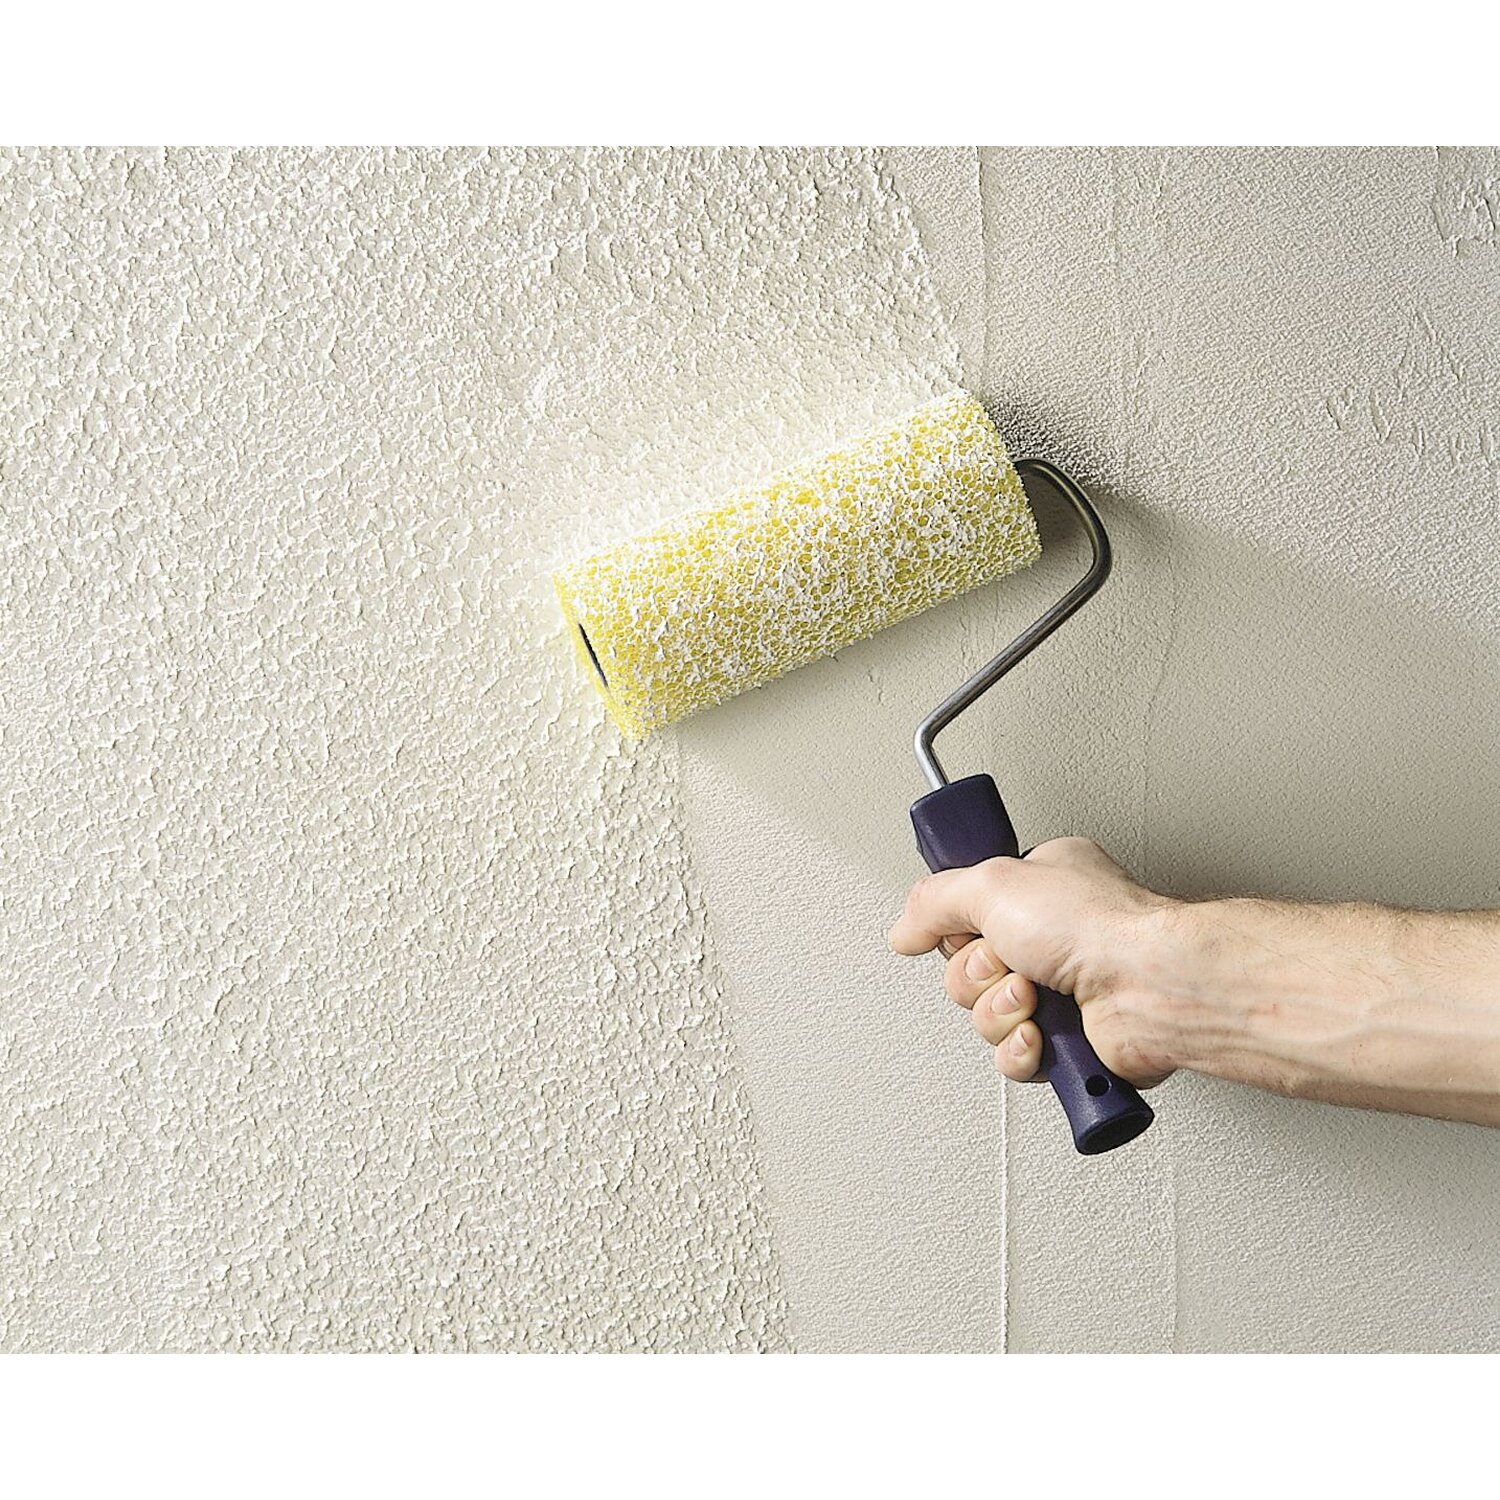 Декоративная краска для стен с эффектом бархата, шелка или штукатурки, декоративная акриловая краска